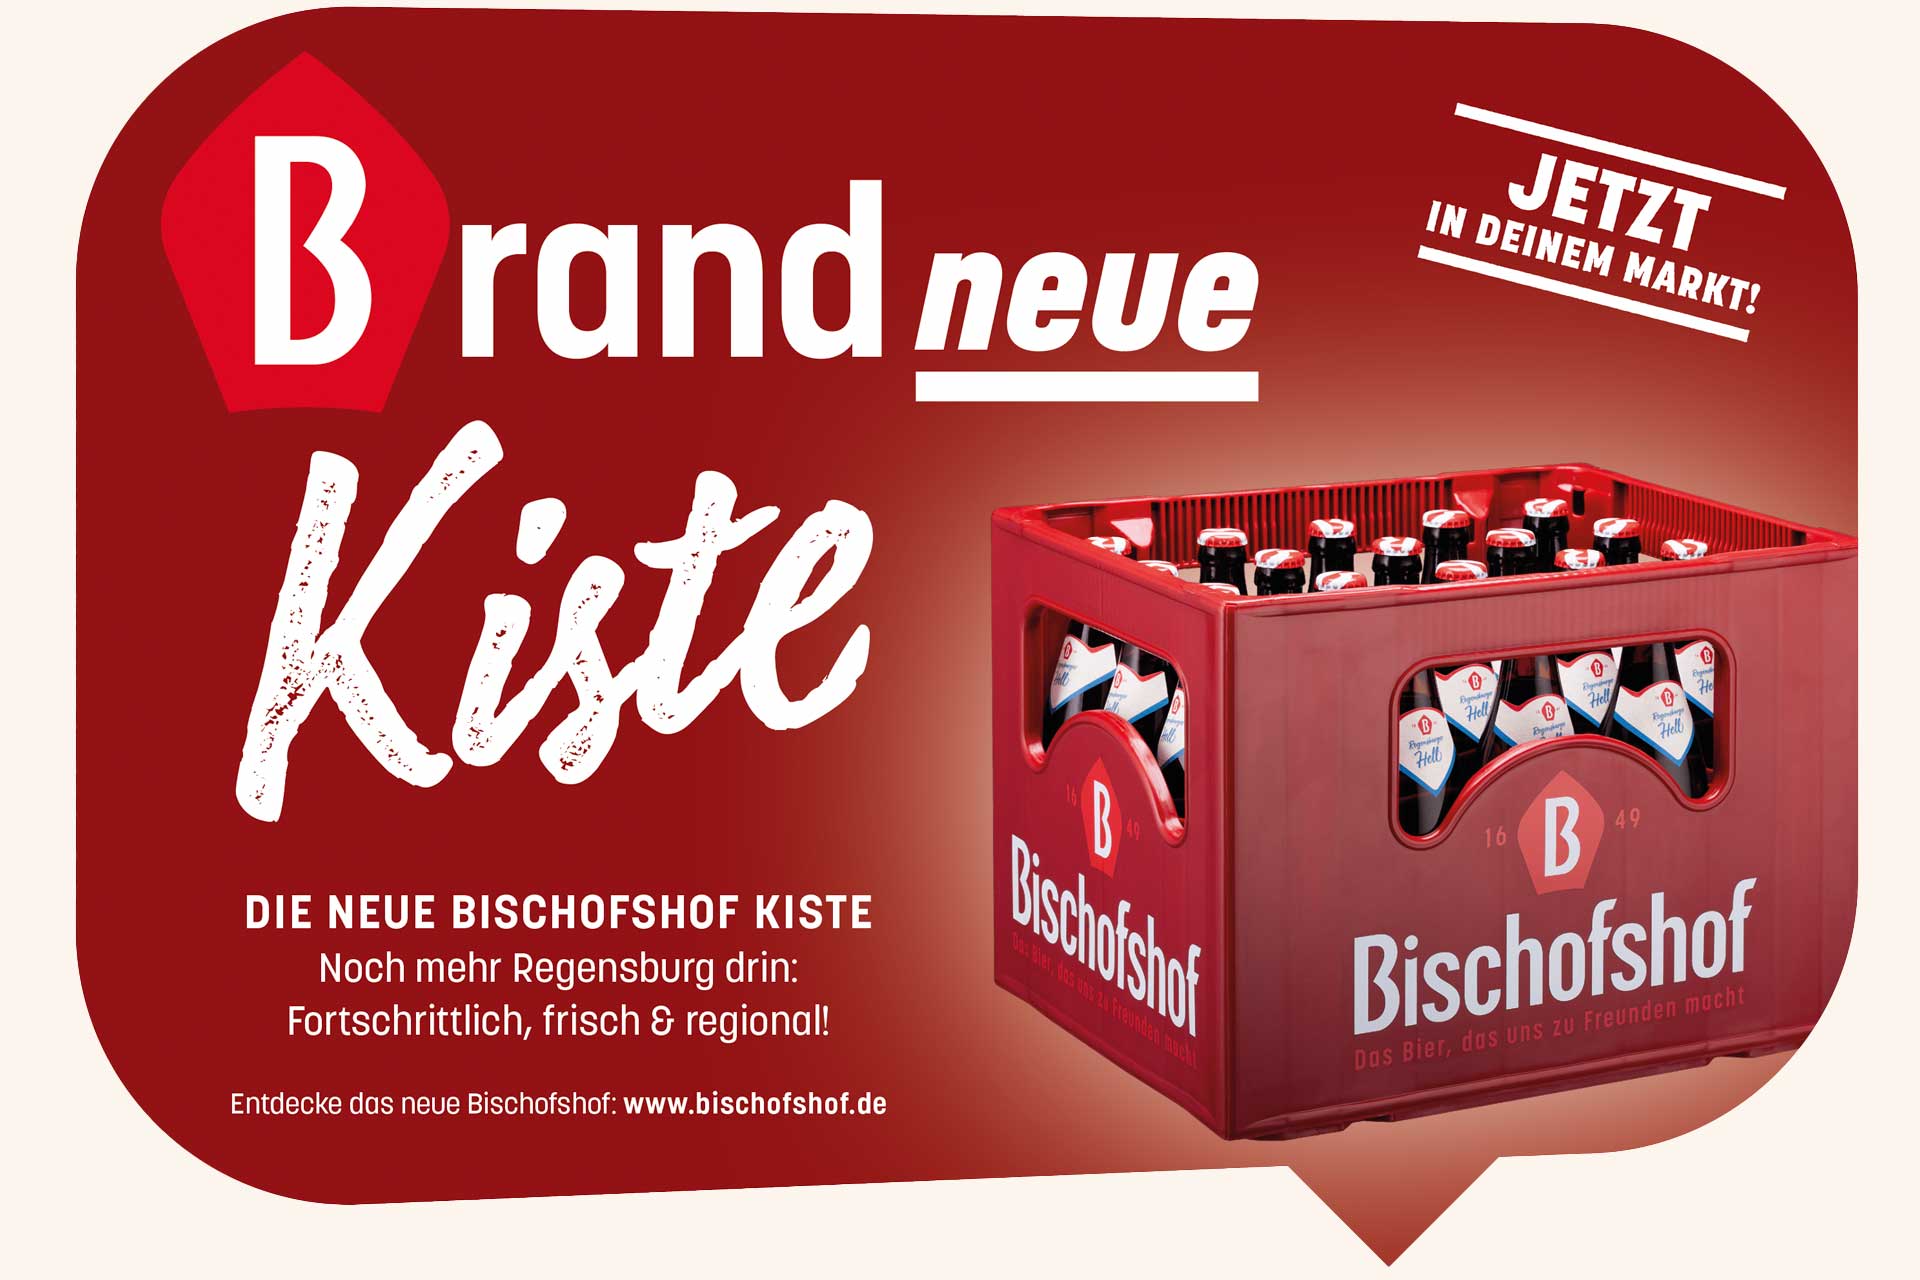 Bischofshof-Brandneue-Kiste-2021-Mai_01